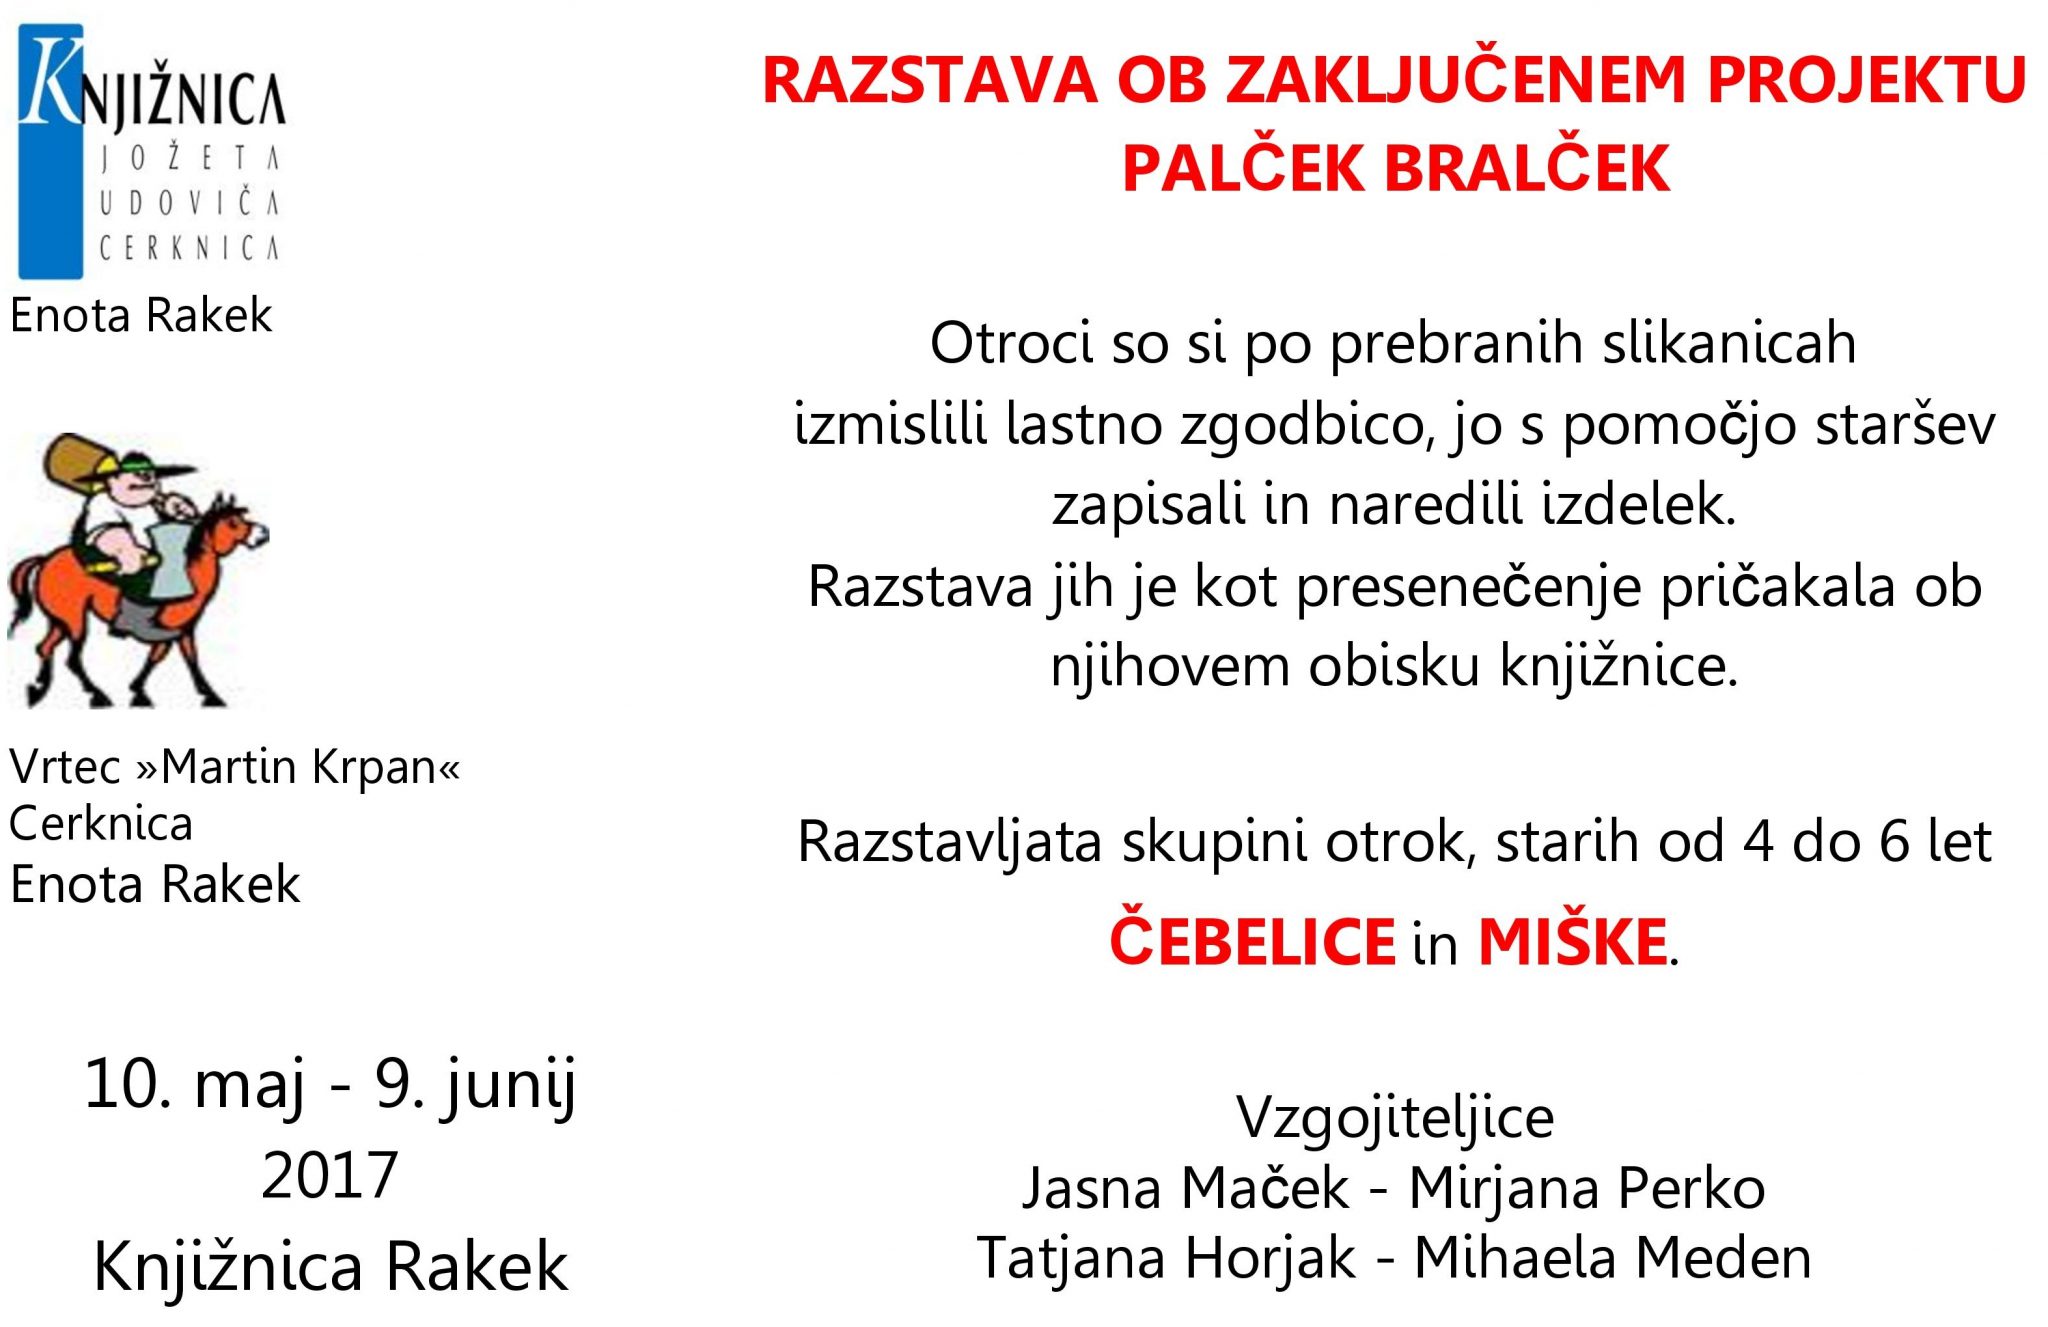 cover 3 - Razstava ob zaključenem projektu Palček Bralček